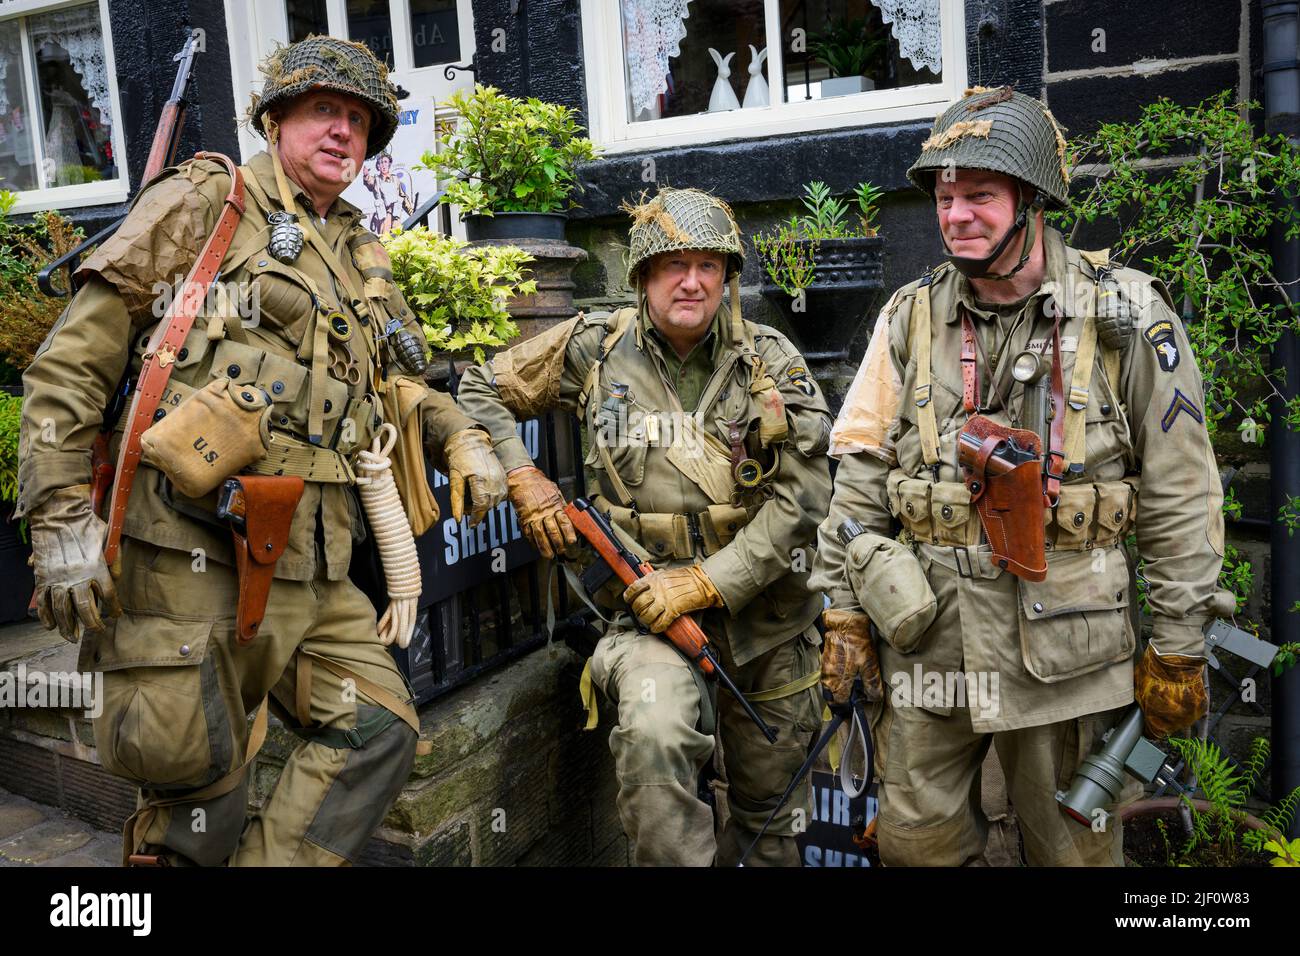 El fin de semana de Haworth 1940 (los hombres en el traje de khaki WW2 como soldados de la 101st División Airborne 'Screaming Eagles') - Main Street, West Yorkshire, Inglaterra Reino Unido. Foto de stock